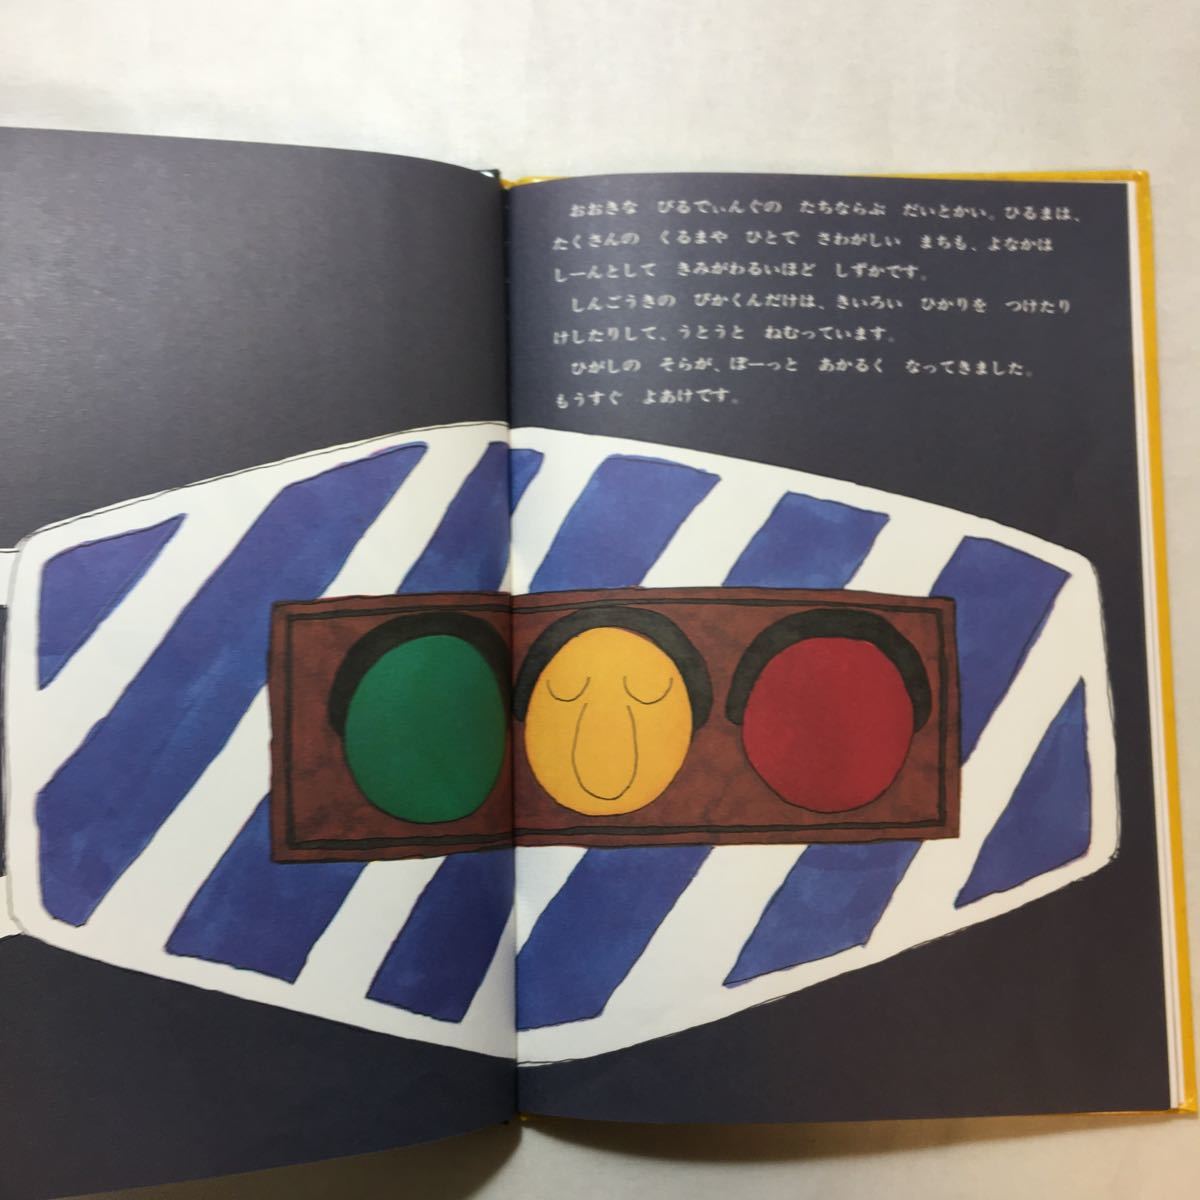 zaa-270♪ぴかくんめをまわす 松居 直 (著)　単行本 1966/12/25